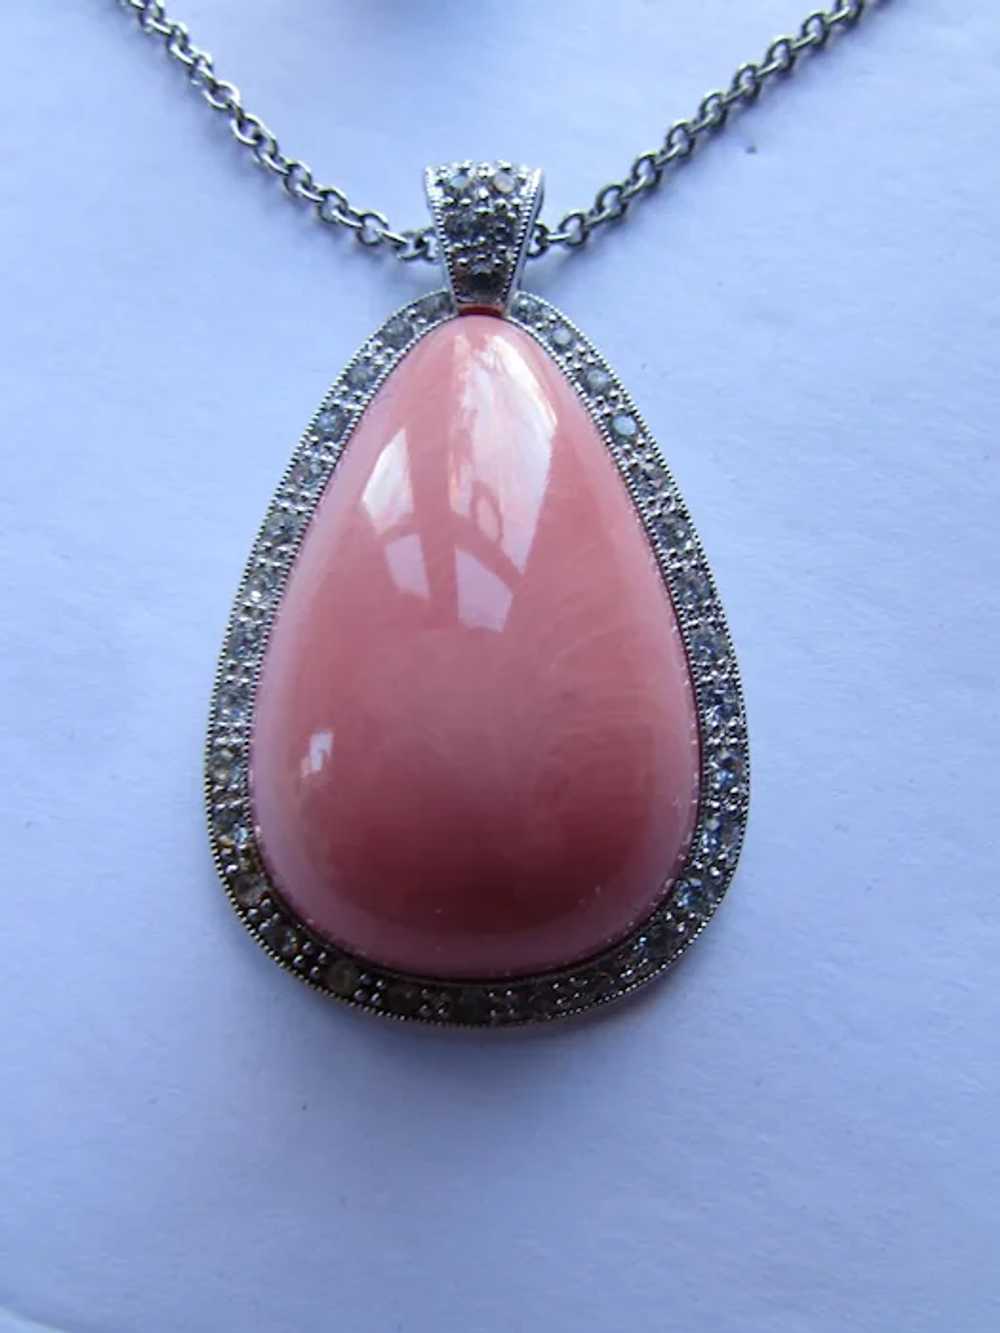 SALE Avon Pale Fire Pendant Necklace & Ring Origi… - image 4